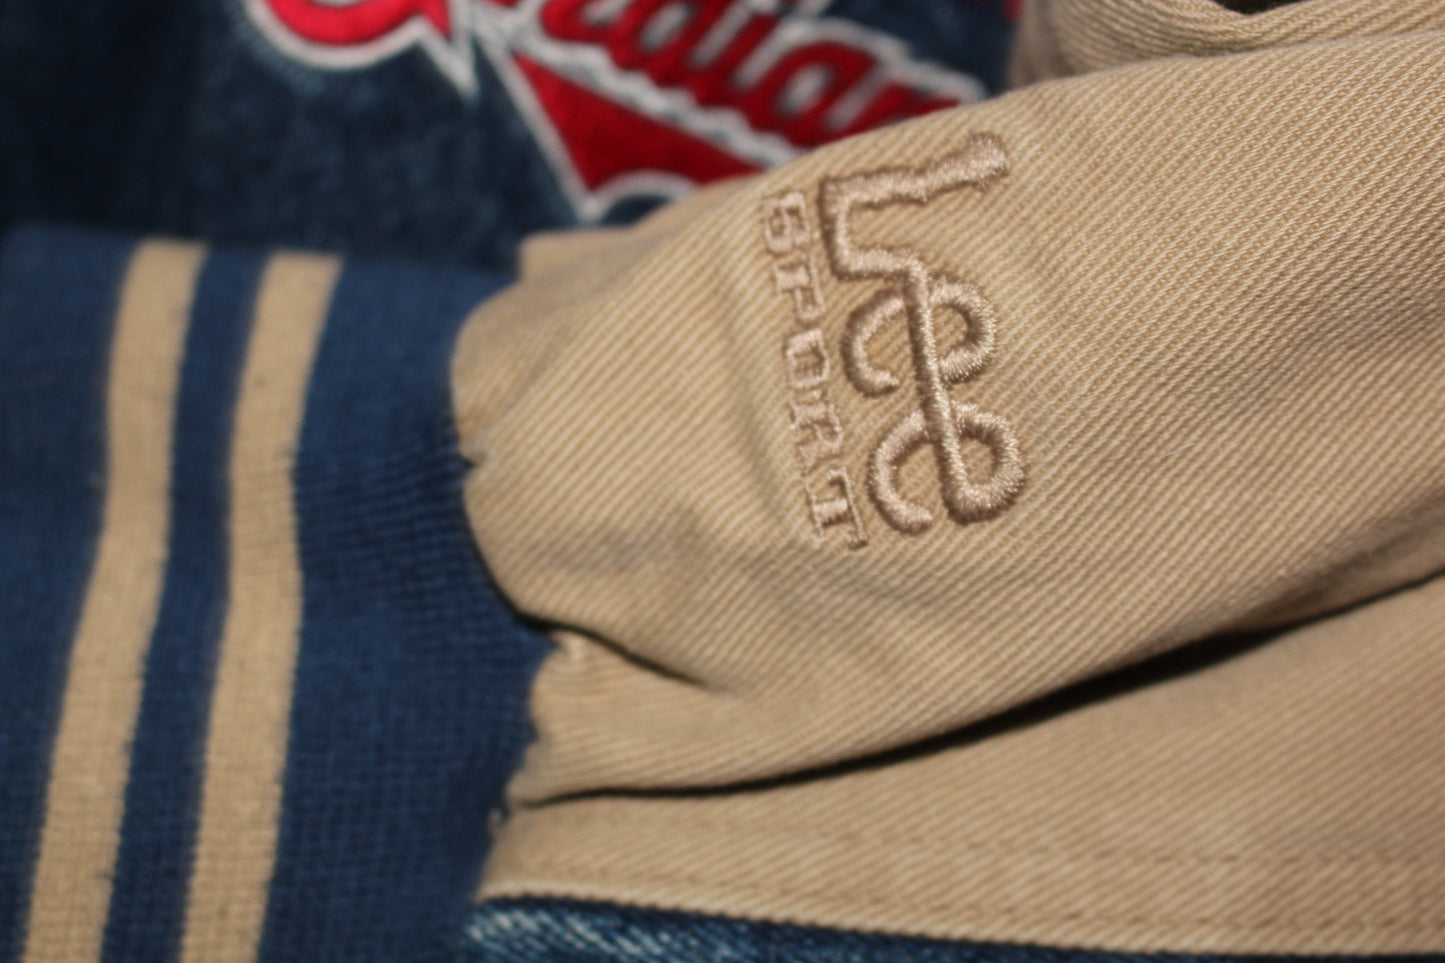 Cleveland Indians Lee Sport Denim Khaki Bomber Jacket (XXL)